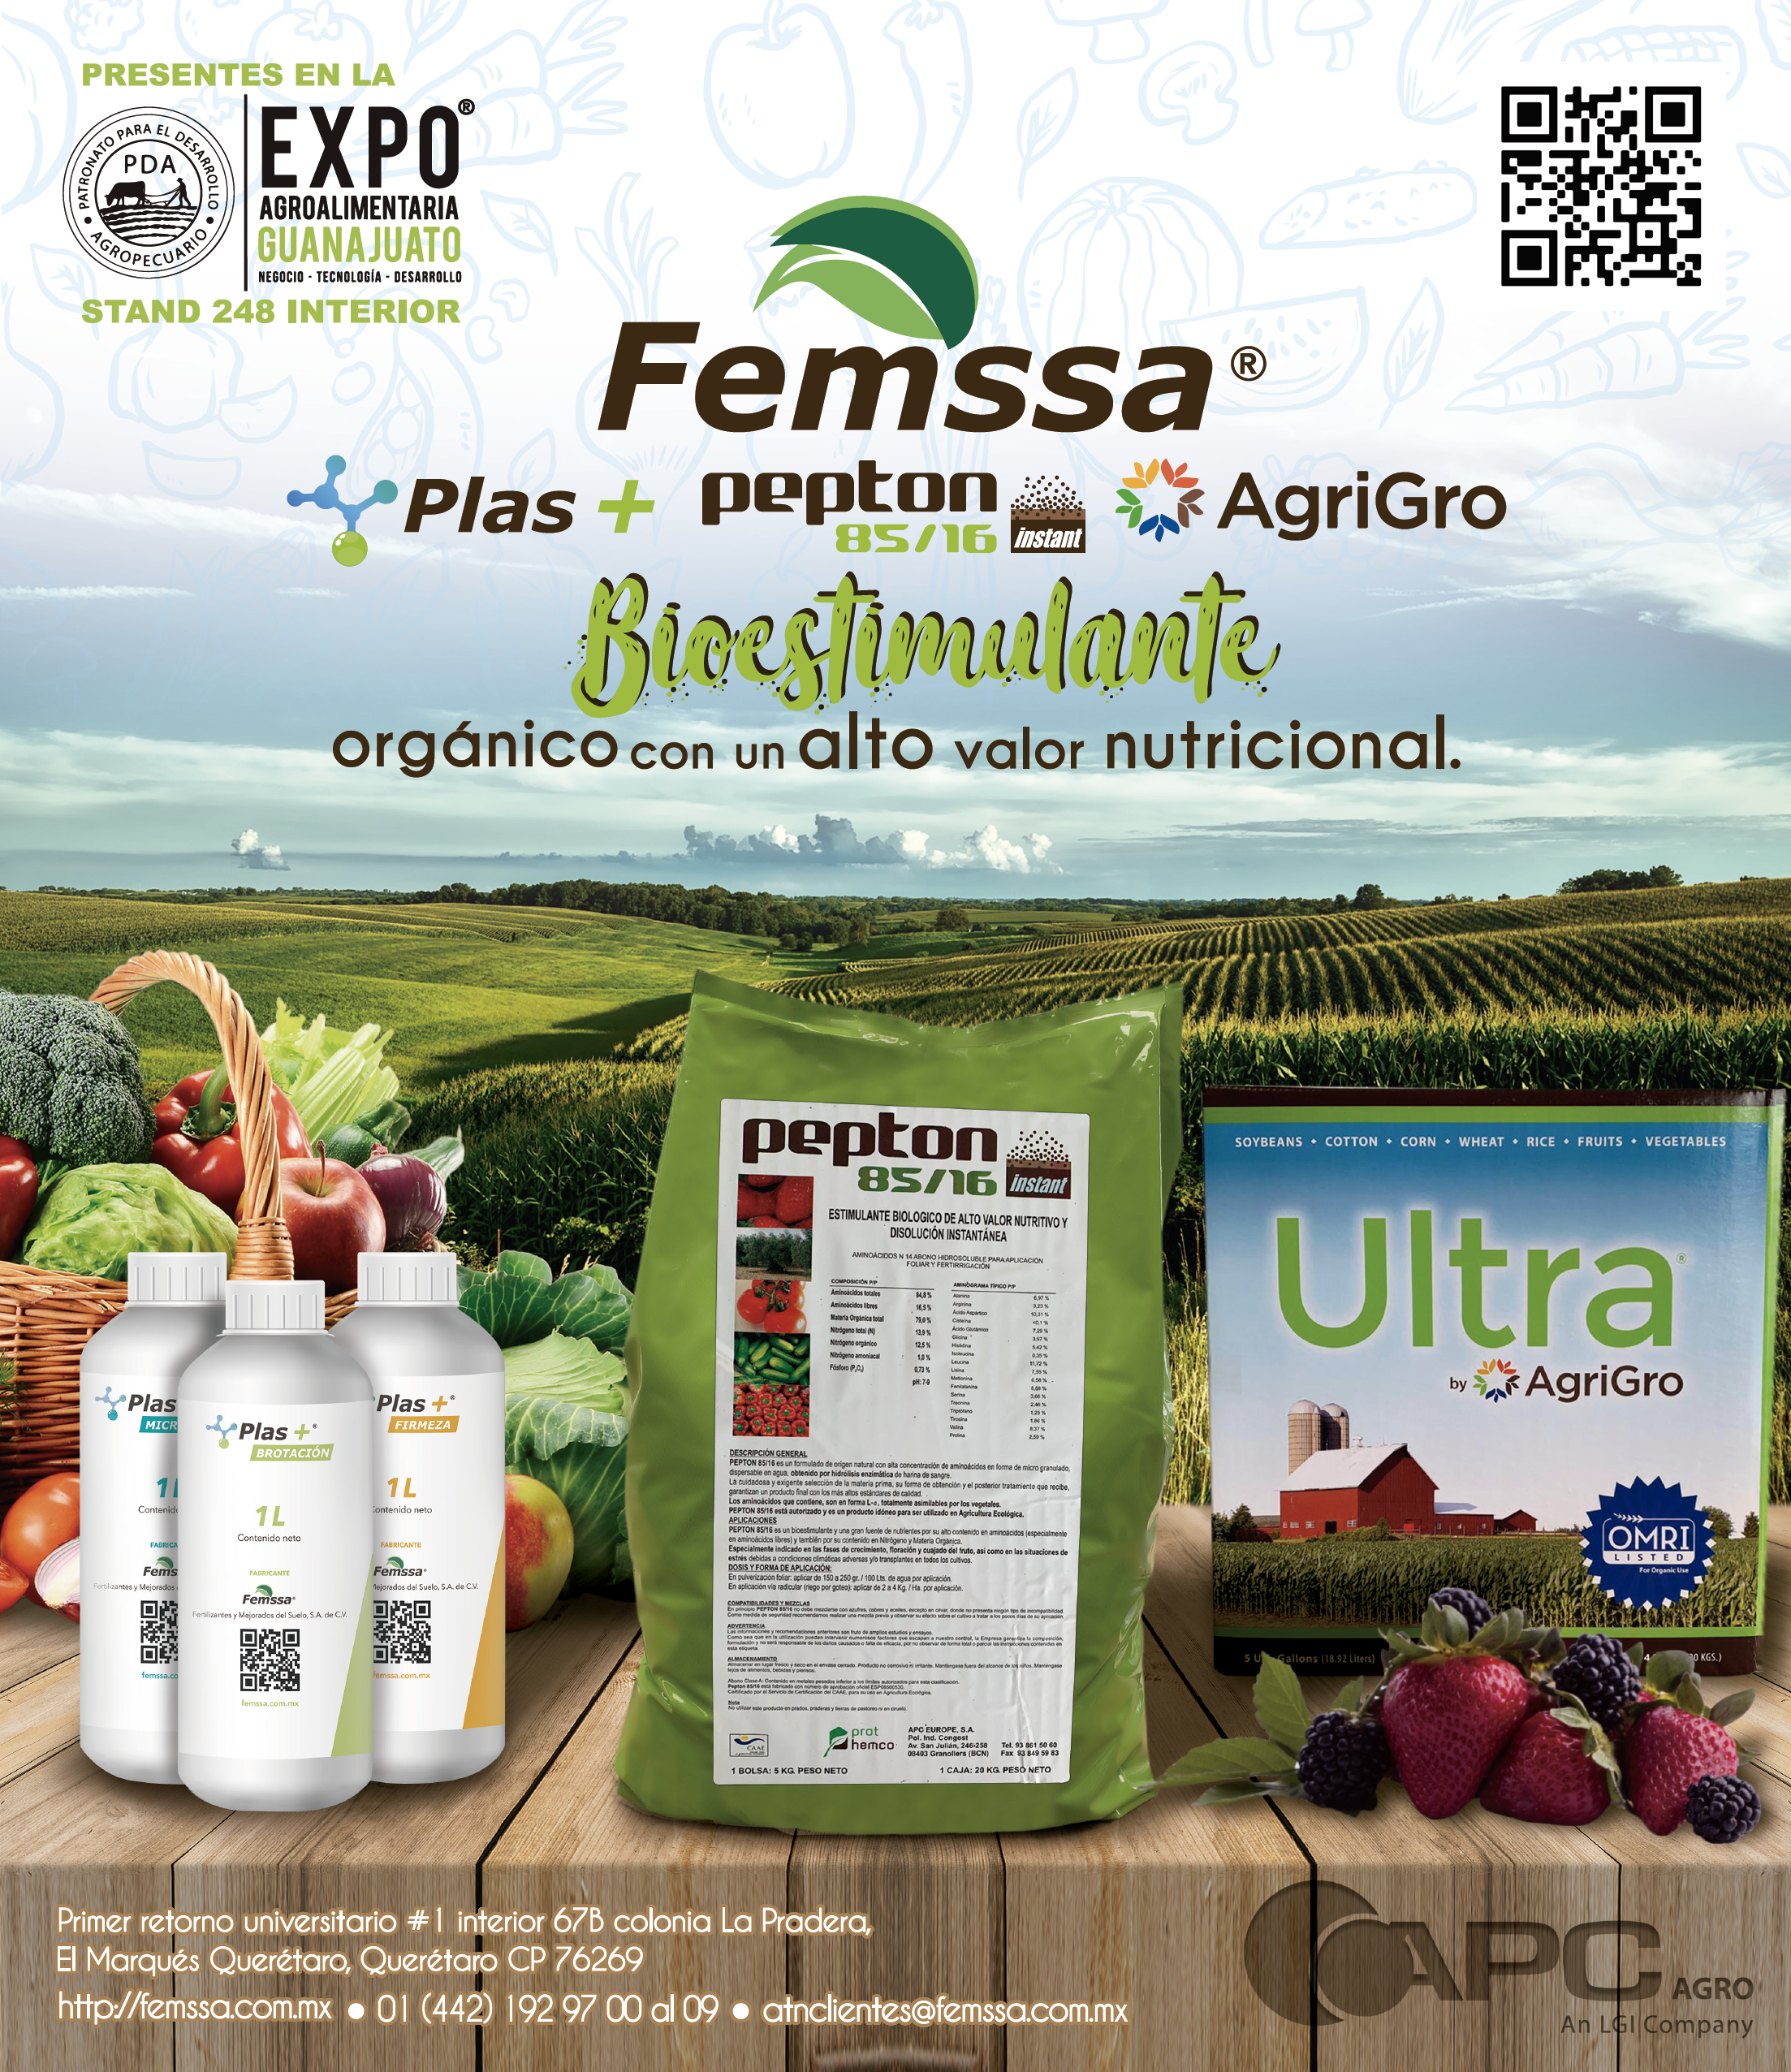 Bioestimulante orgánico con un alto valor nutricional.